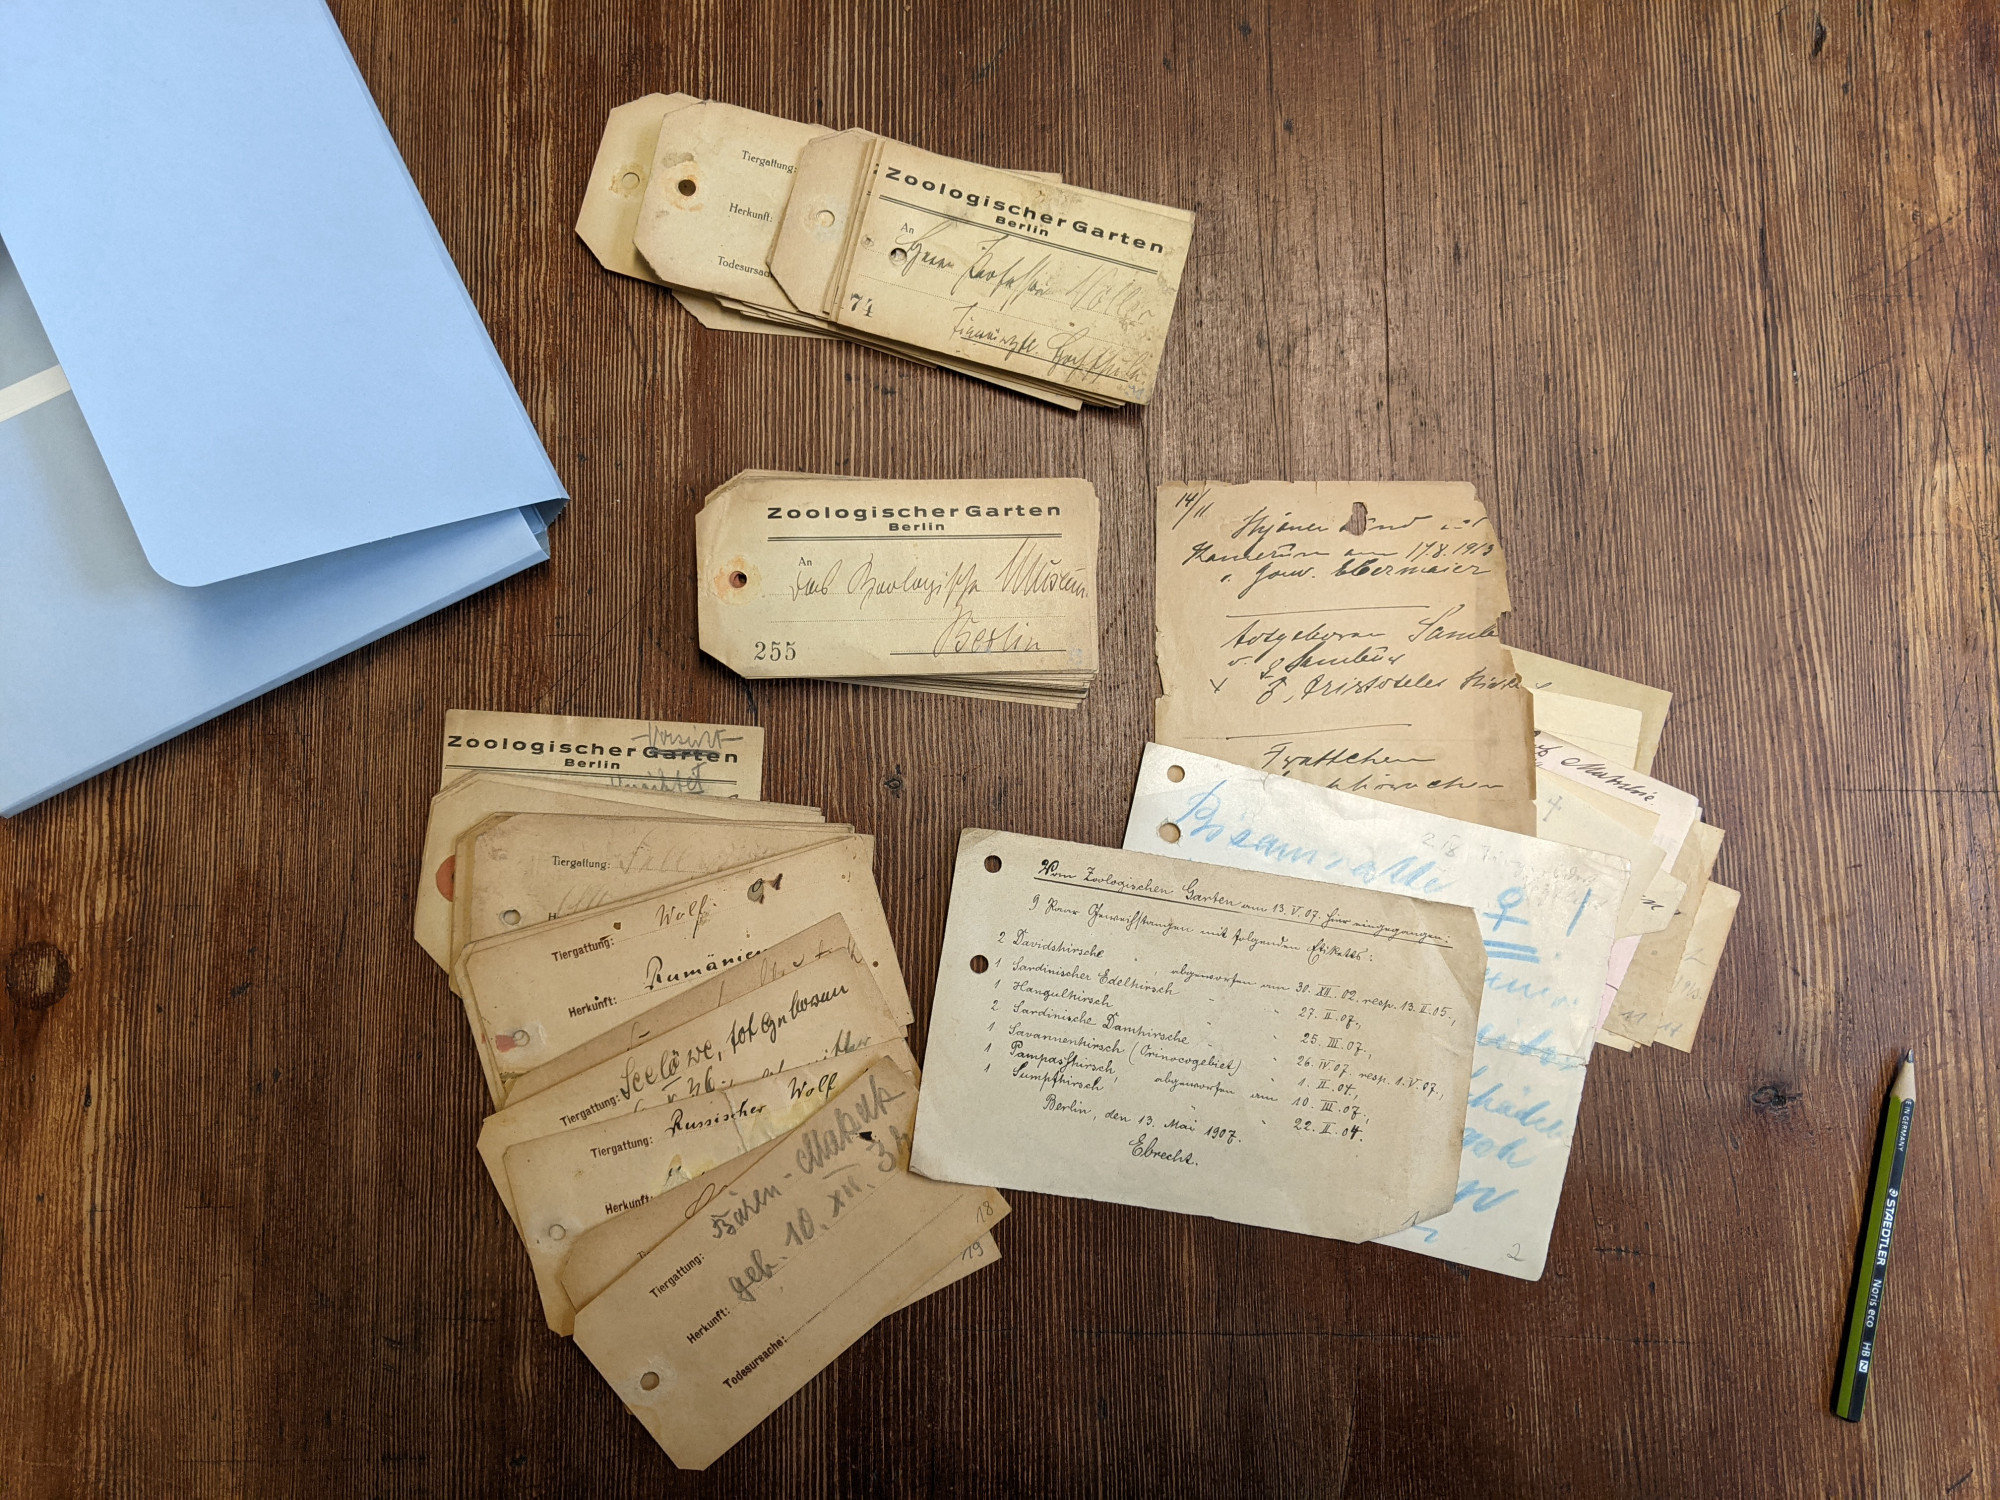 Archivarbeit: Stapel zahlreicher, vergilbter Etiketten und Zettel neben Mappe und Stift.